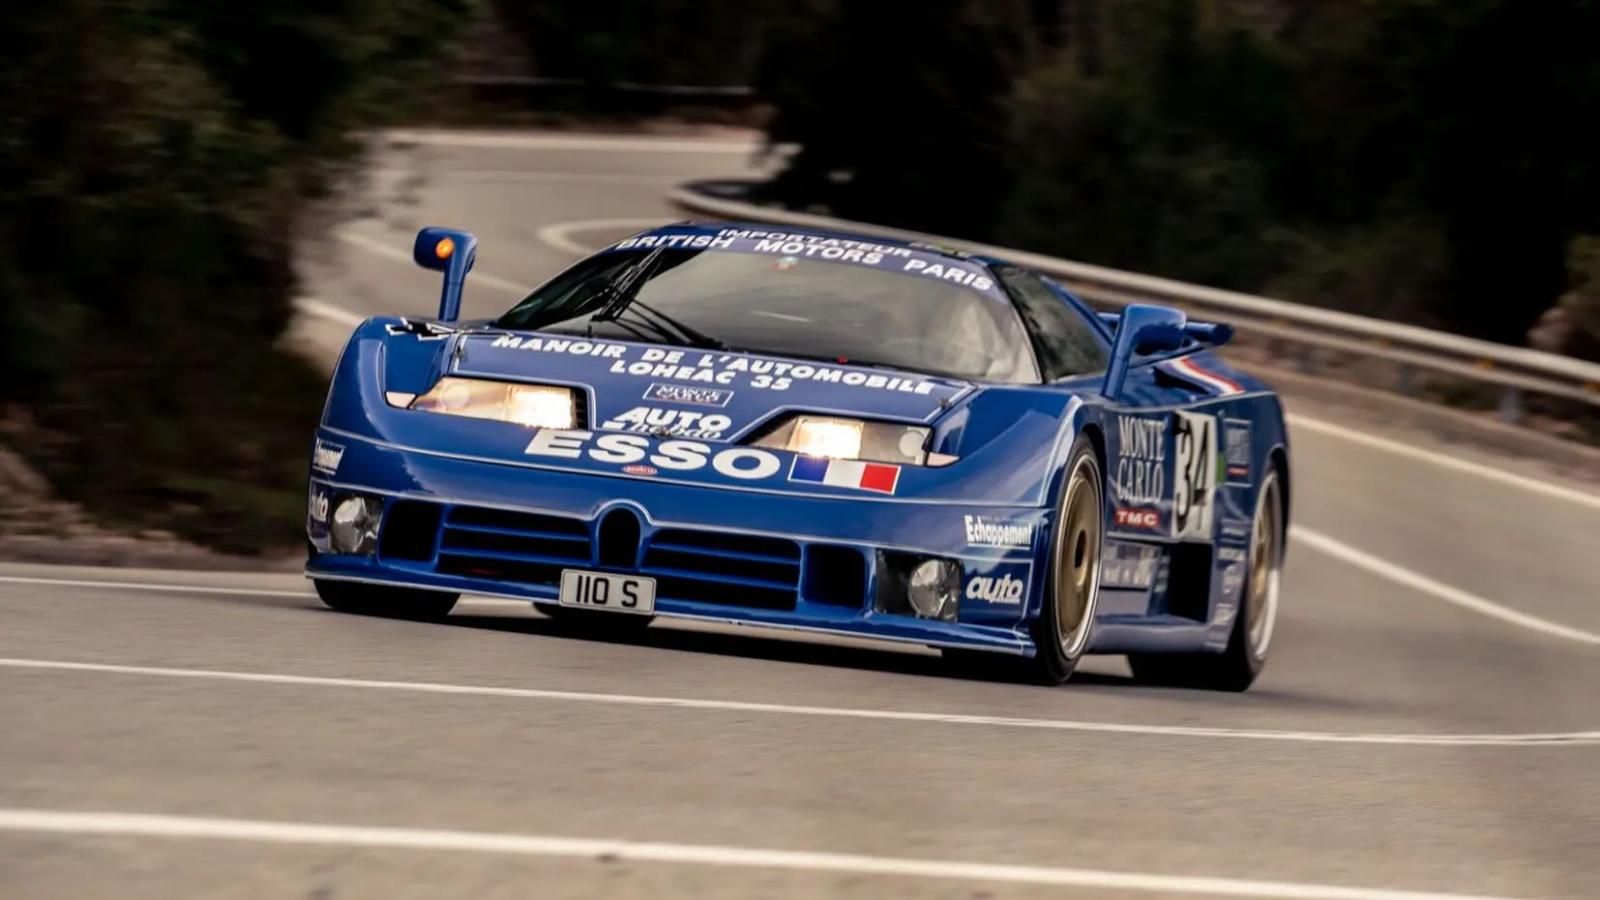 Bugatti EB110 Le Mans